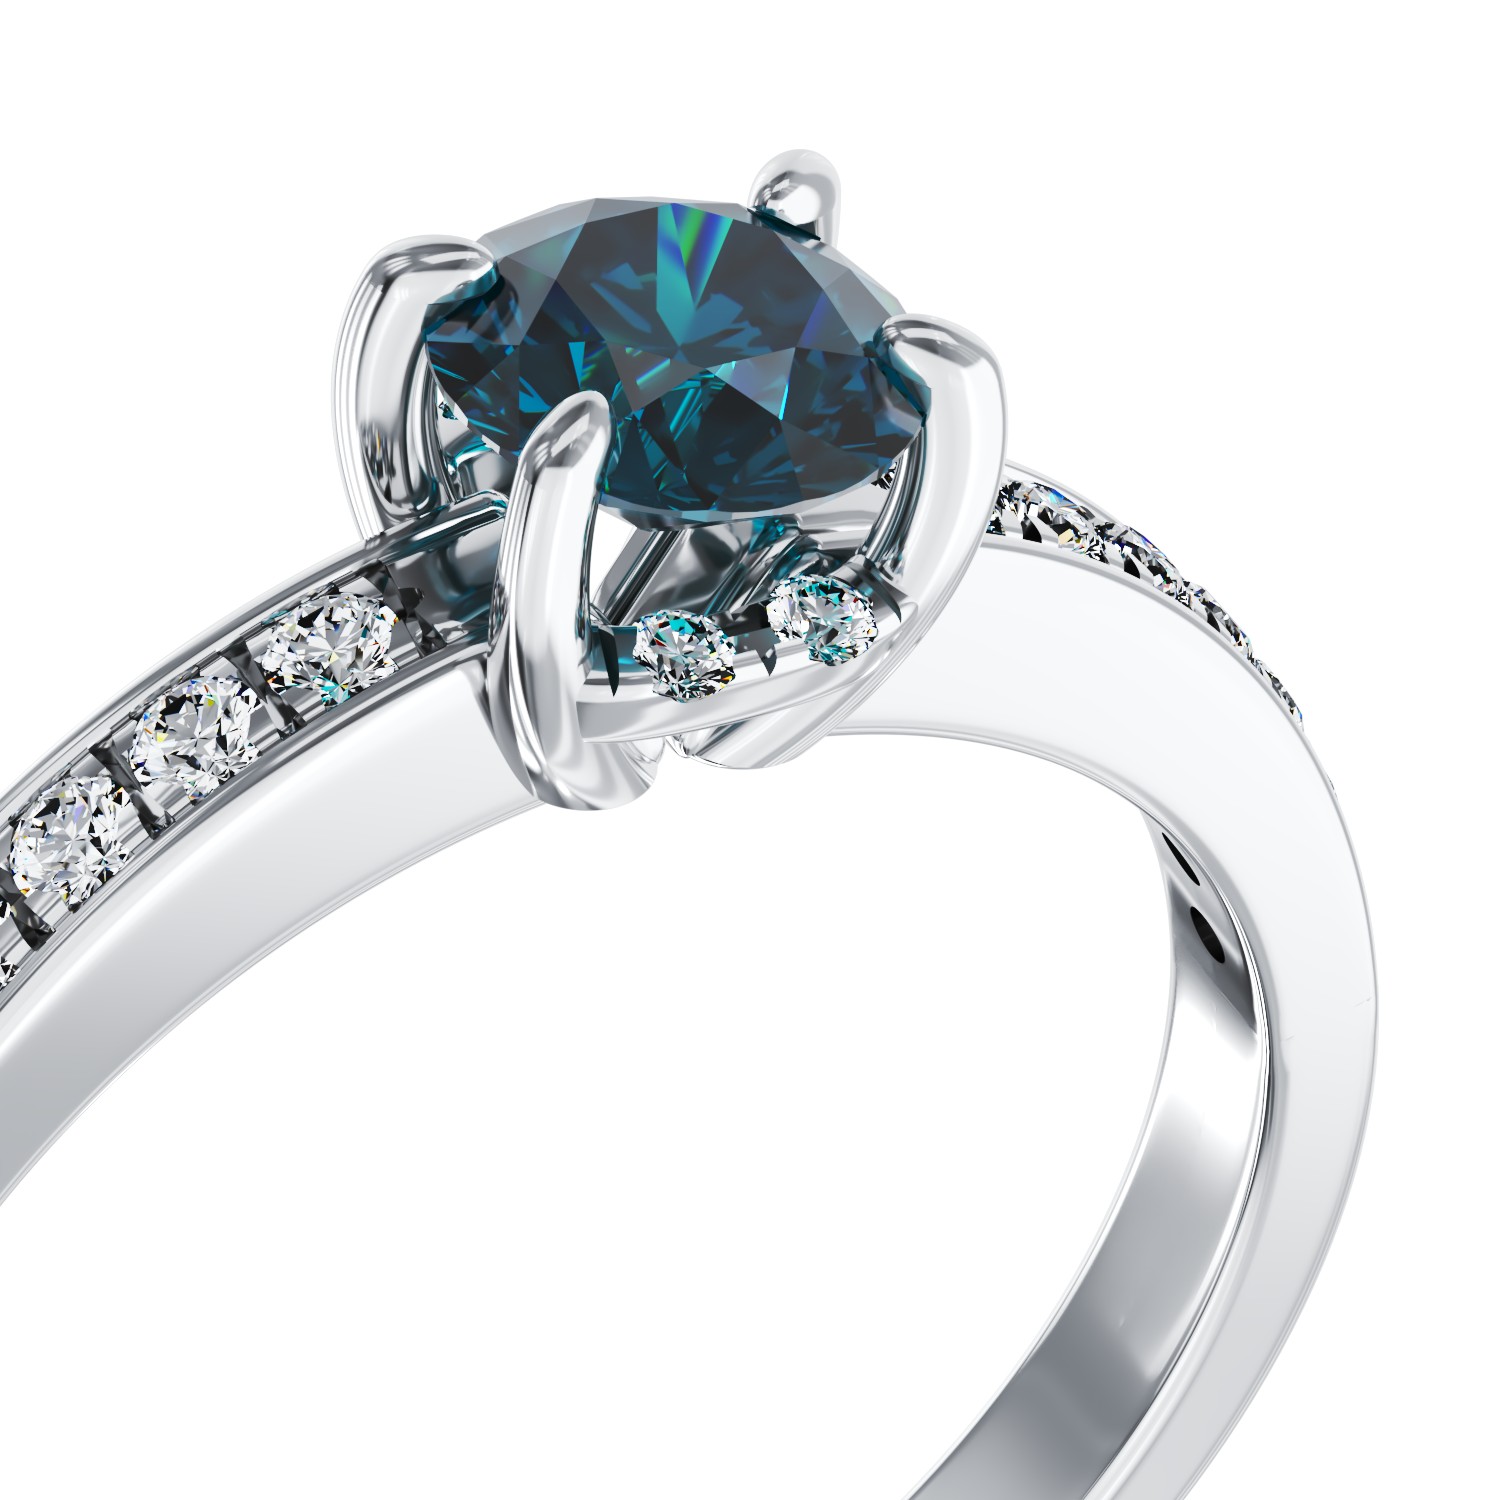 Eljegyzési gyűrű 18K-os fehér aranyból 0,44ct kék gyémánttal.